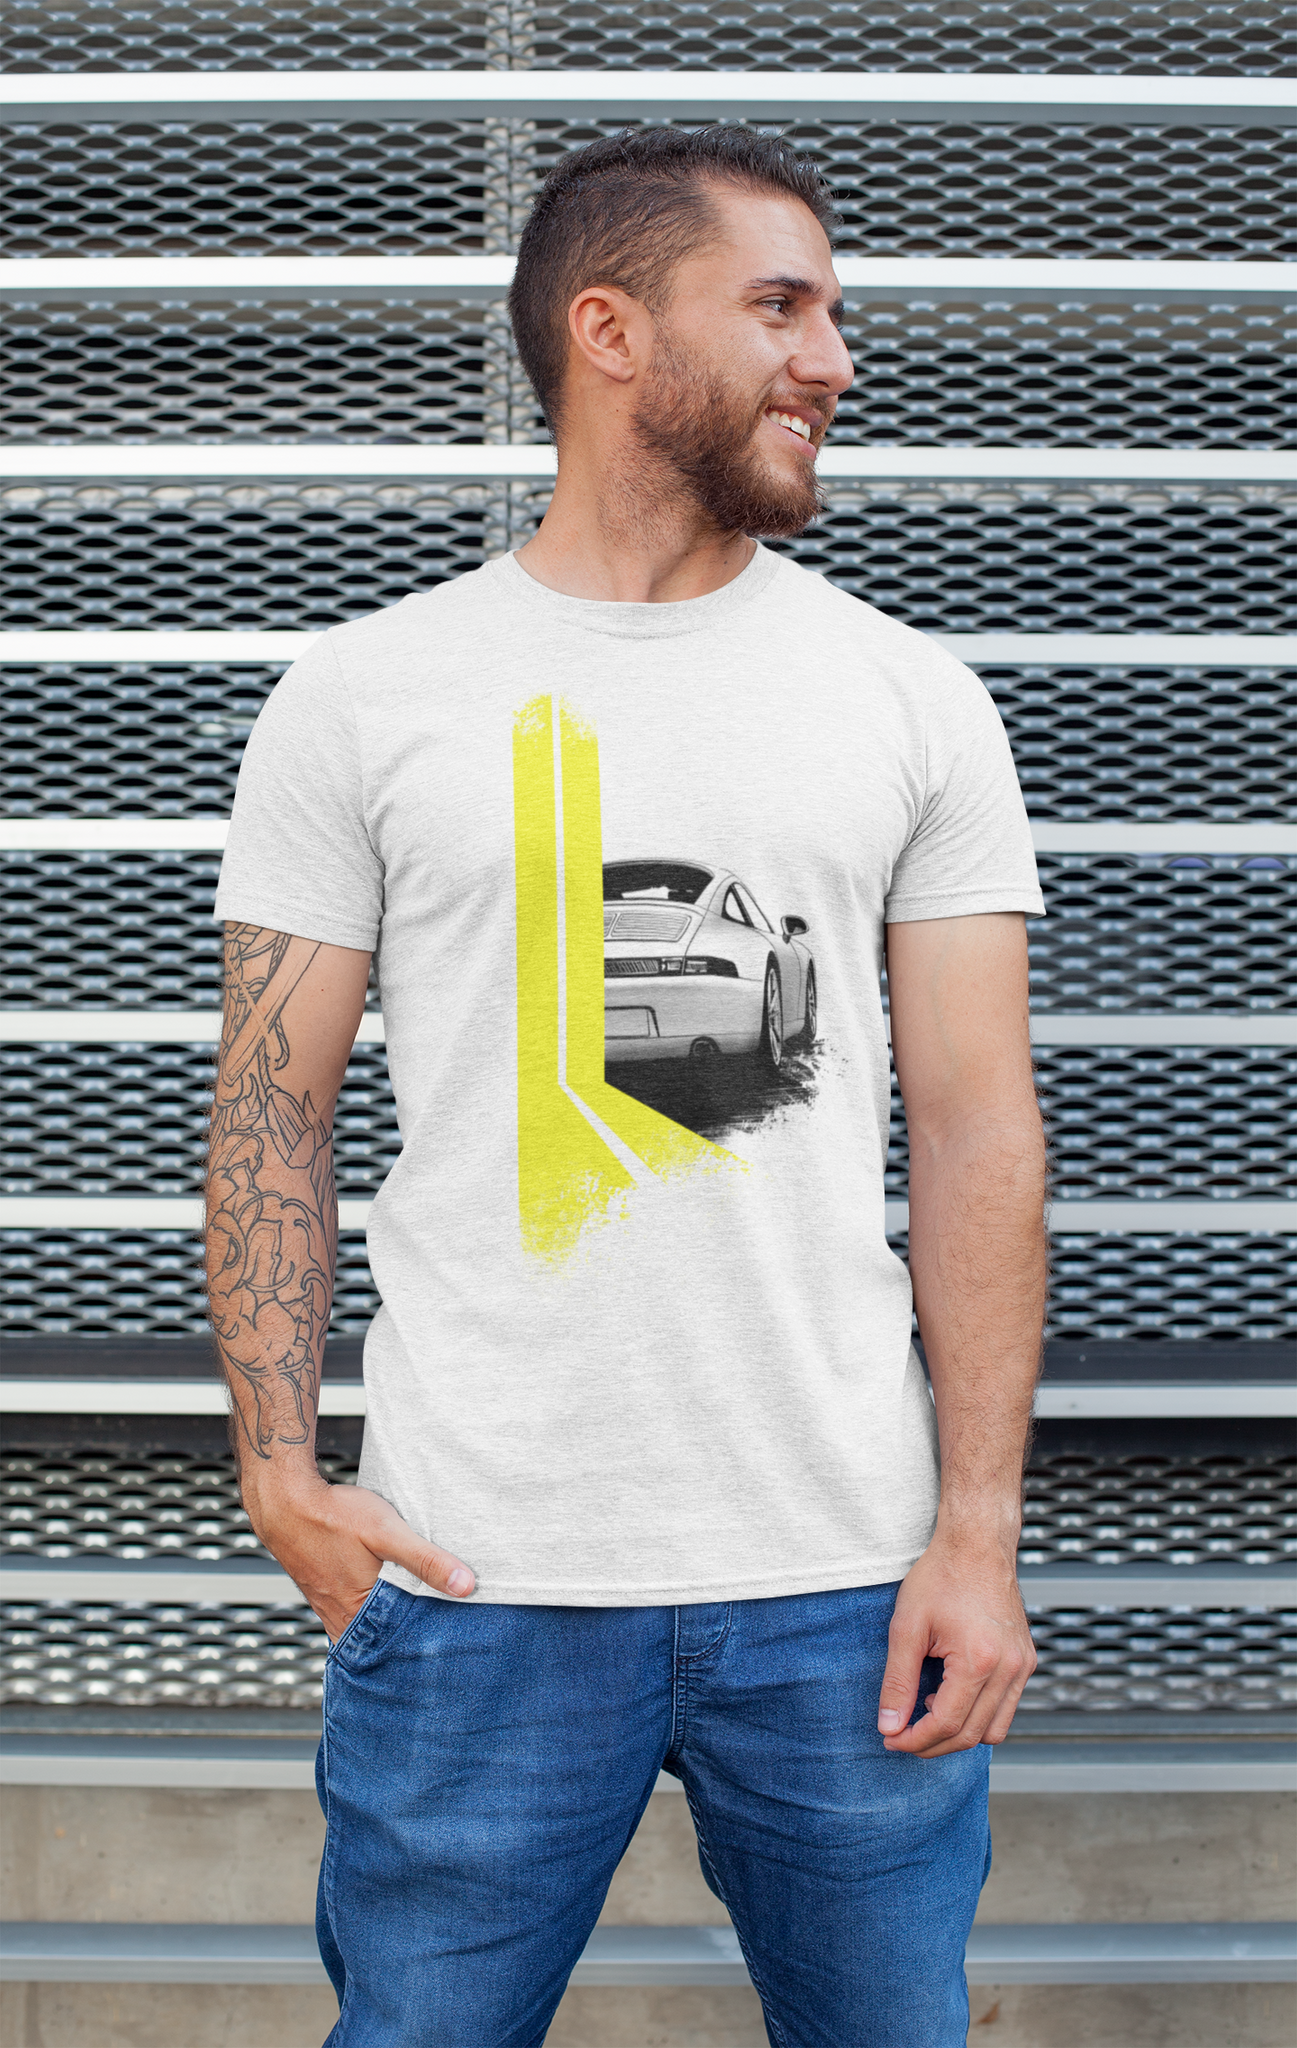 Flat Six / 993 Porsche 911 (Yellow) Tee-Shirt